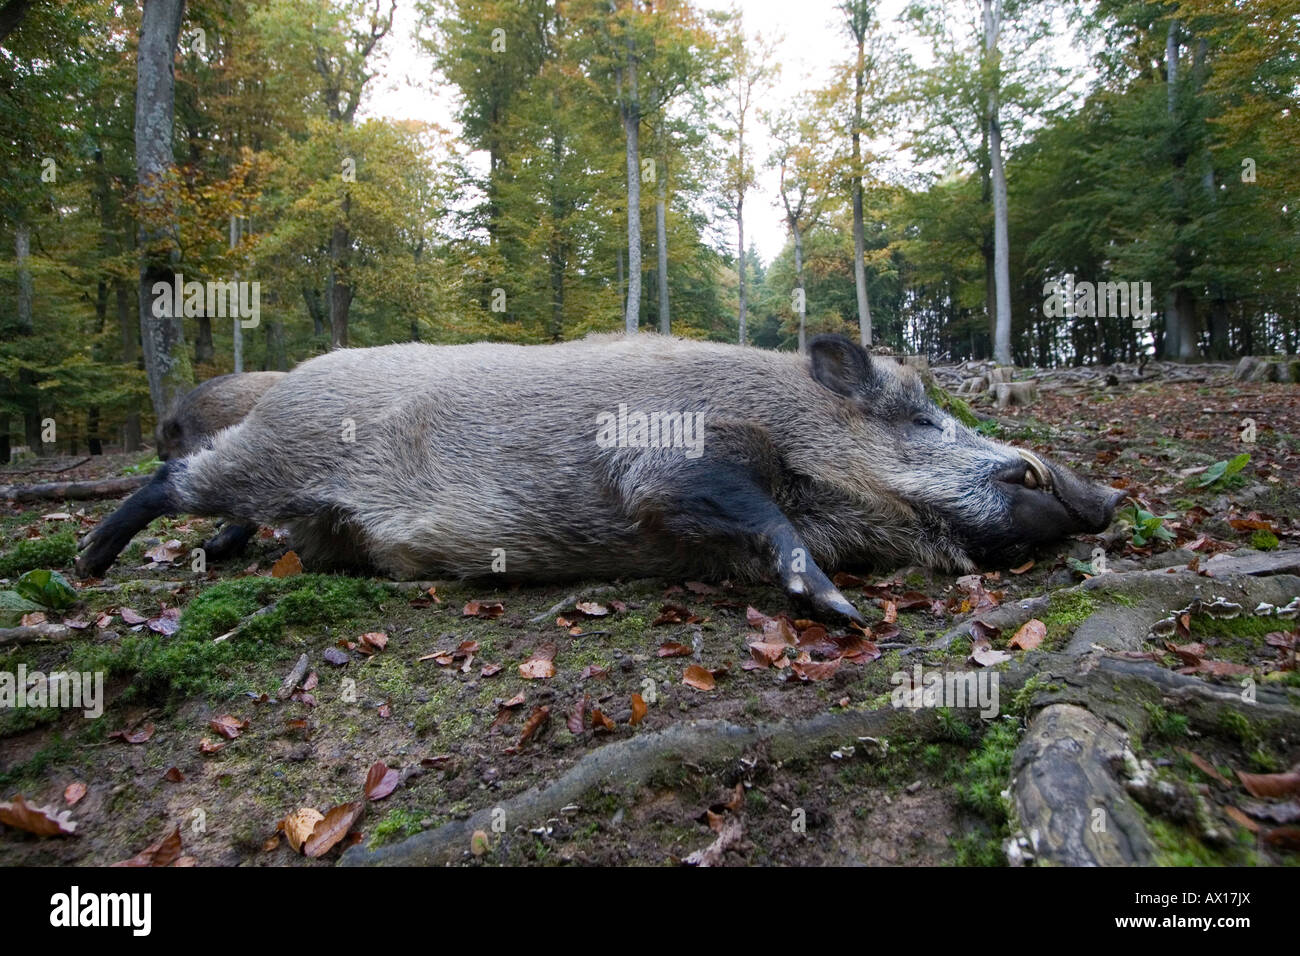 Male Wild Boar (Sus scrofa), Daun Zoo, Daun, Rhineland-Palatinate, Germany, Europe Stock Photo